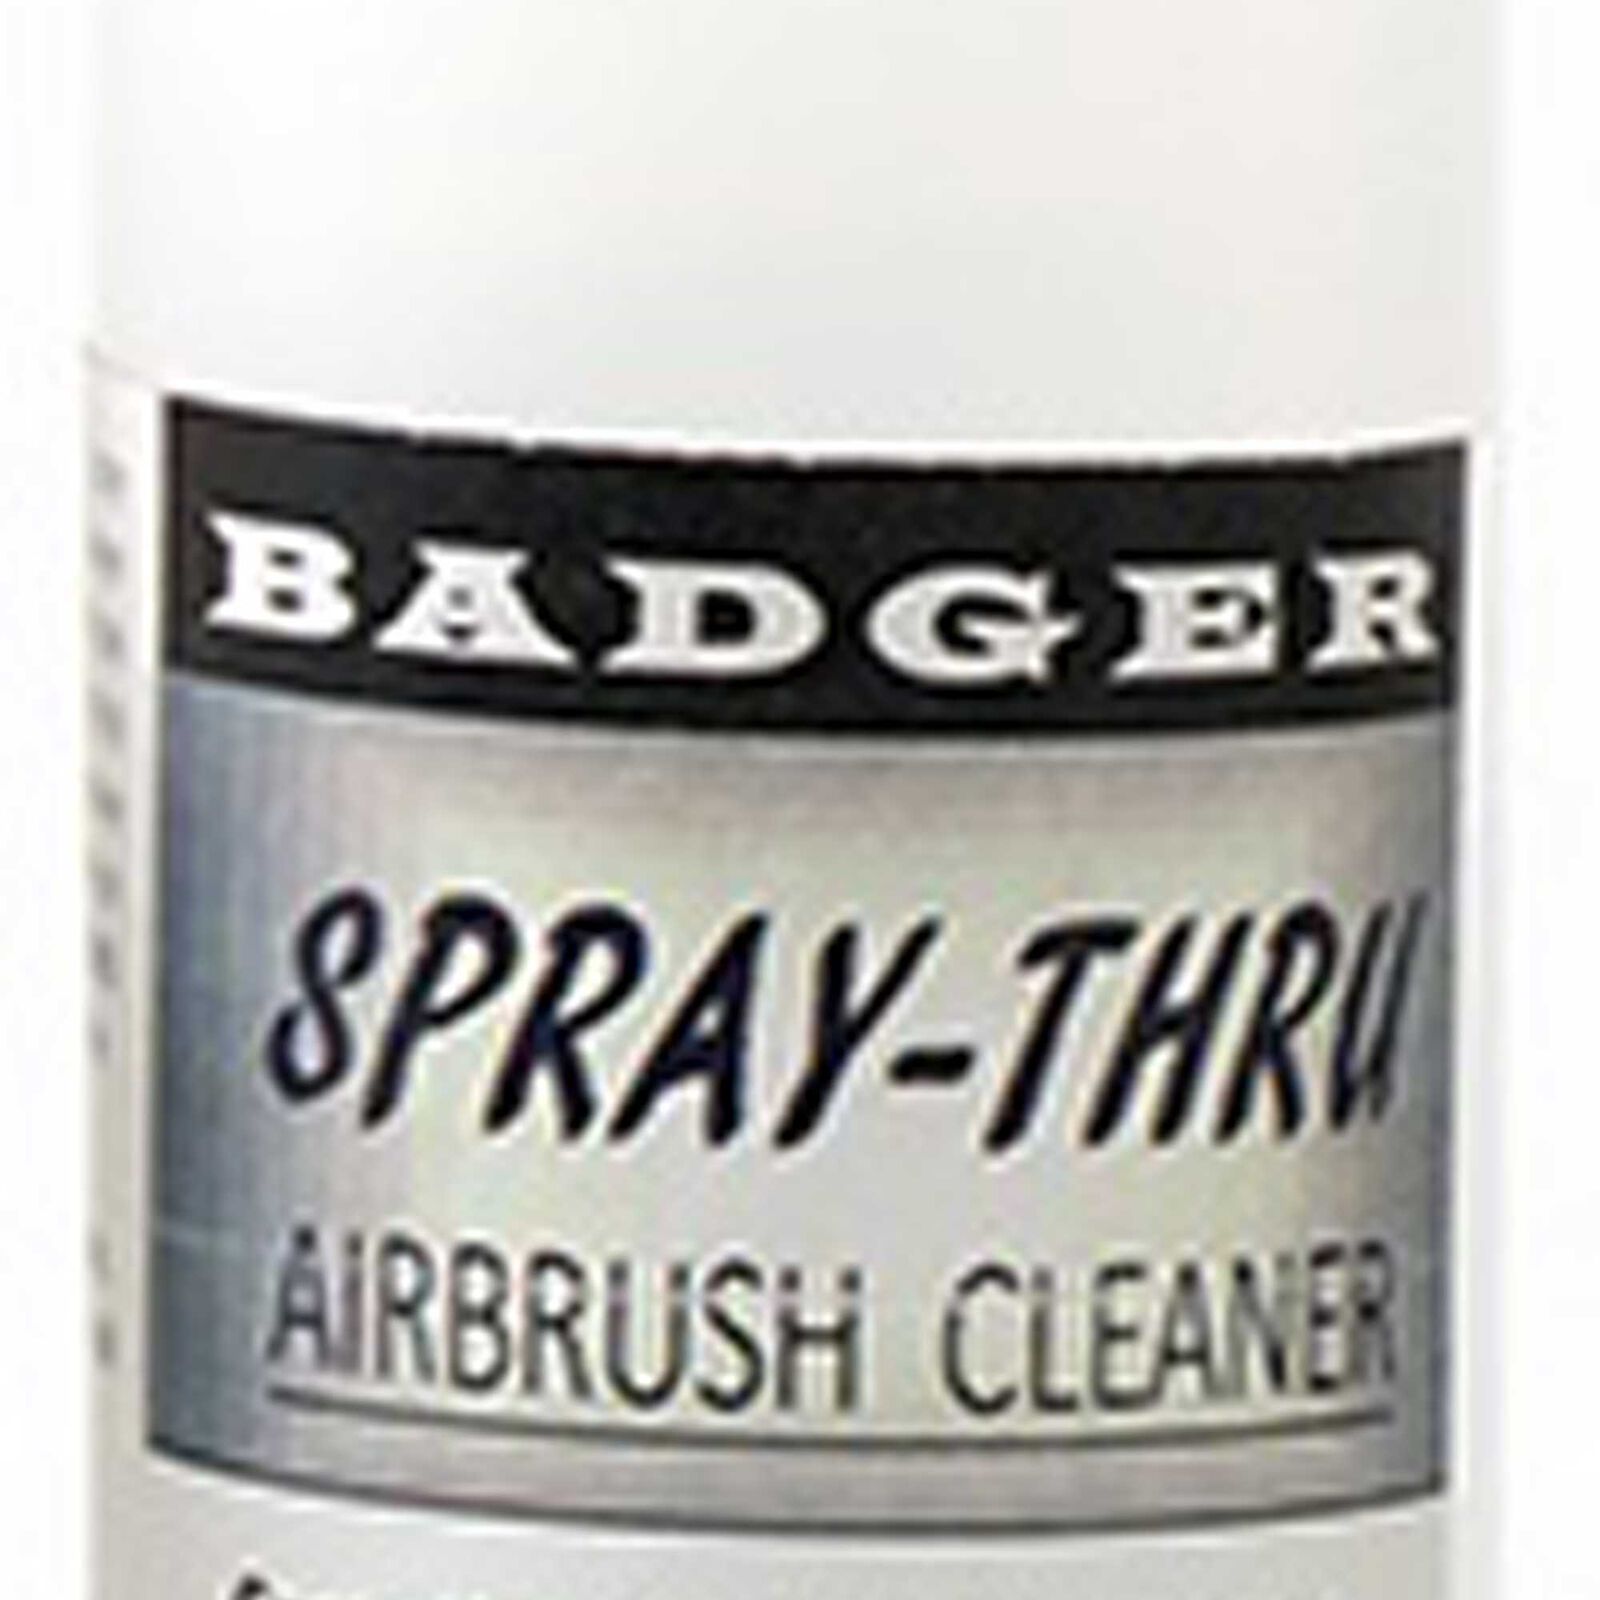 Spray-Thru Airbrush Cleaner, 2oz